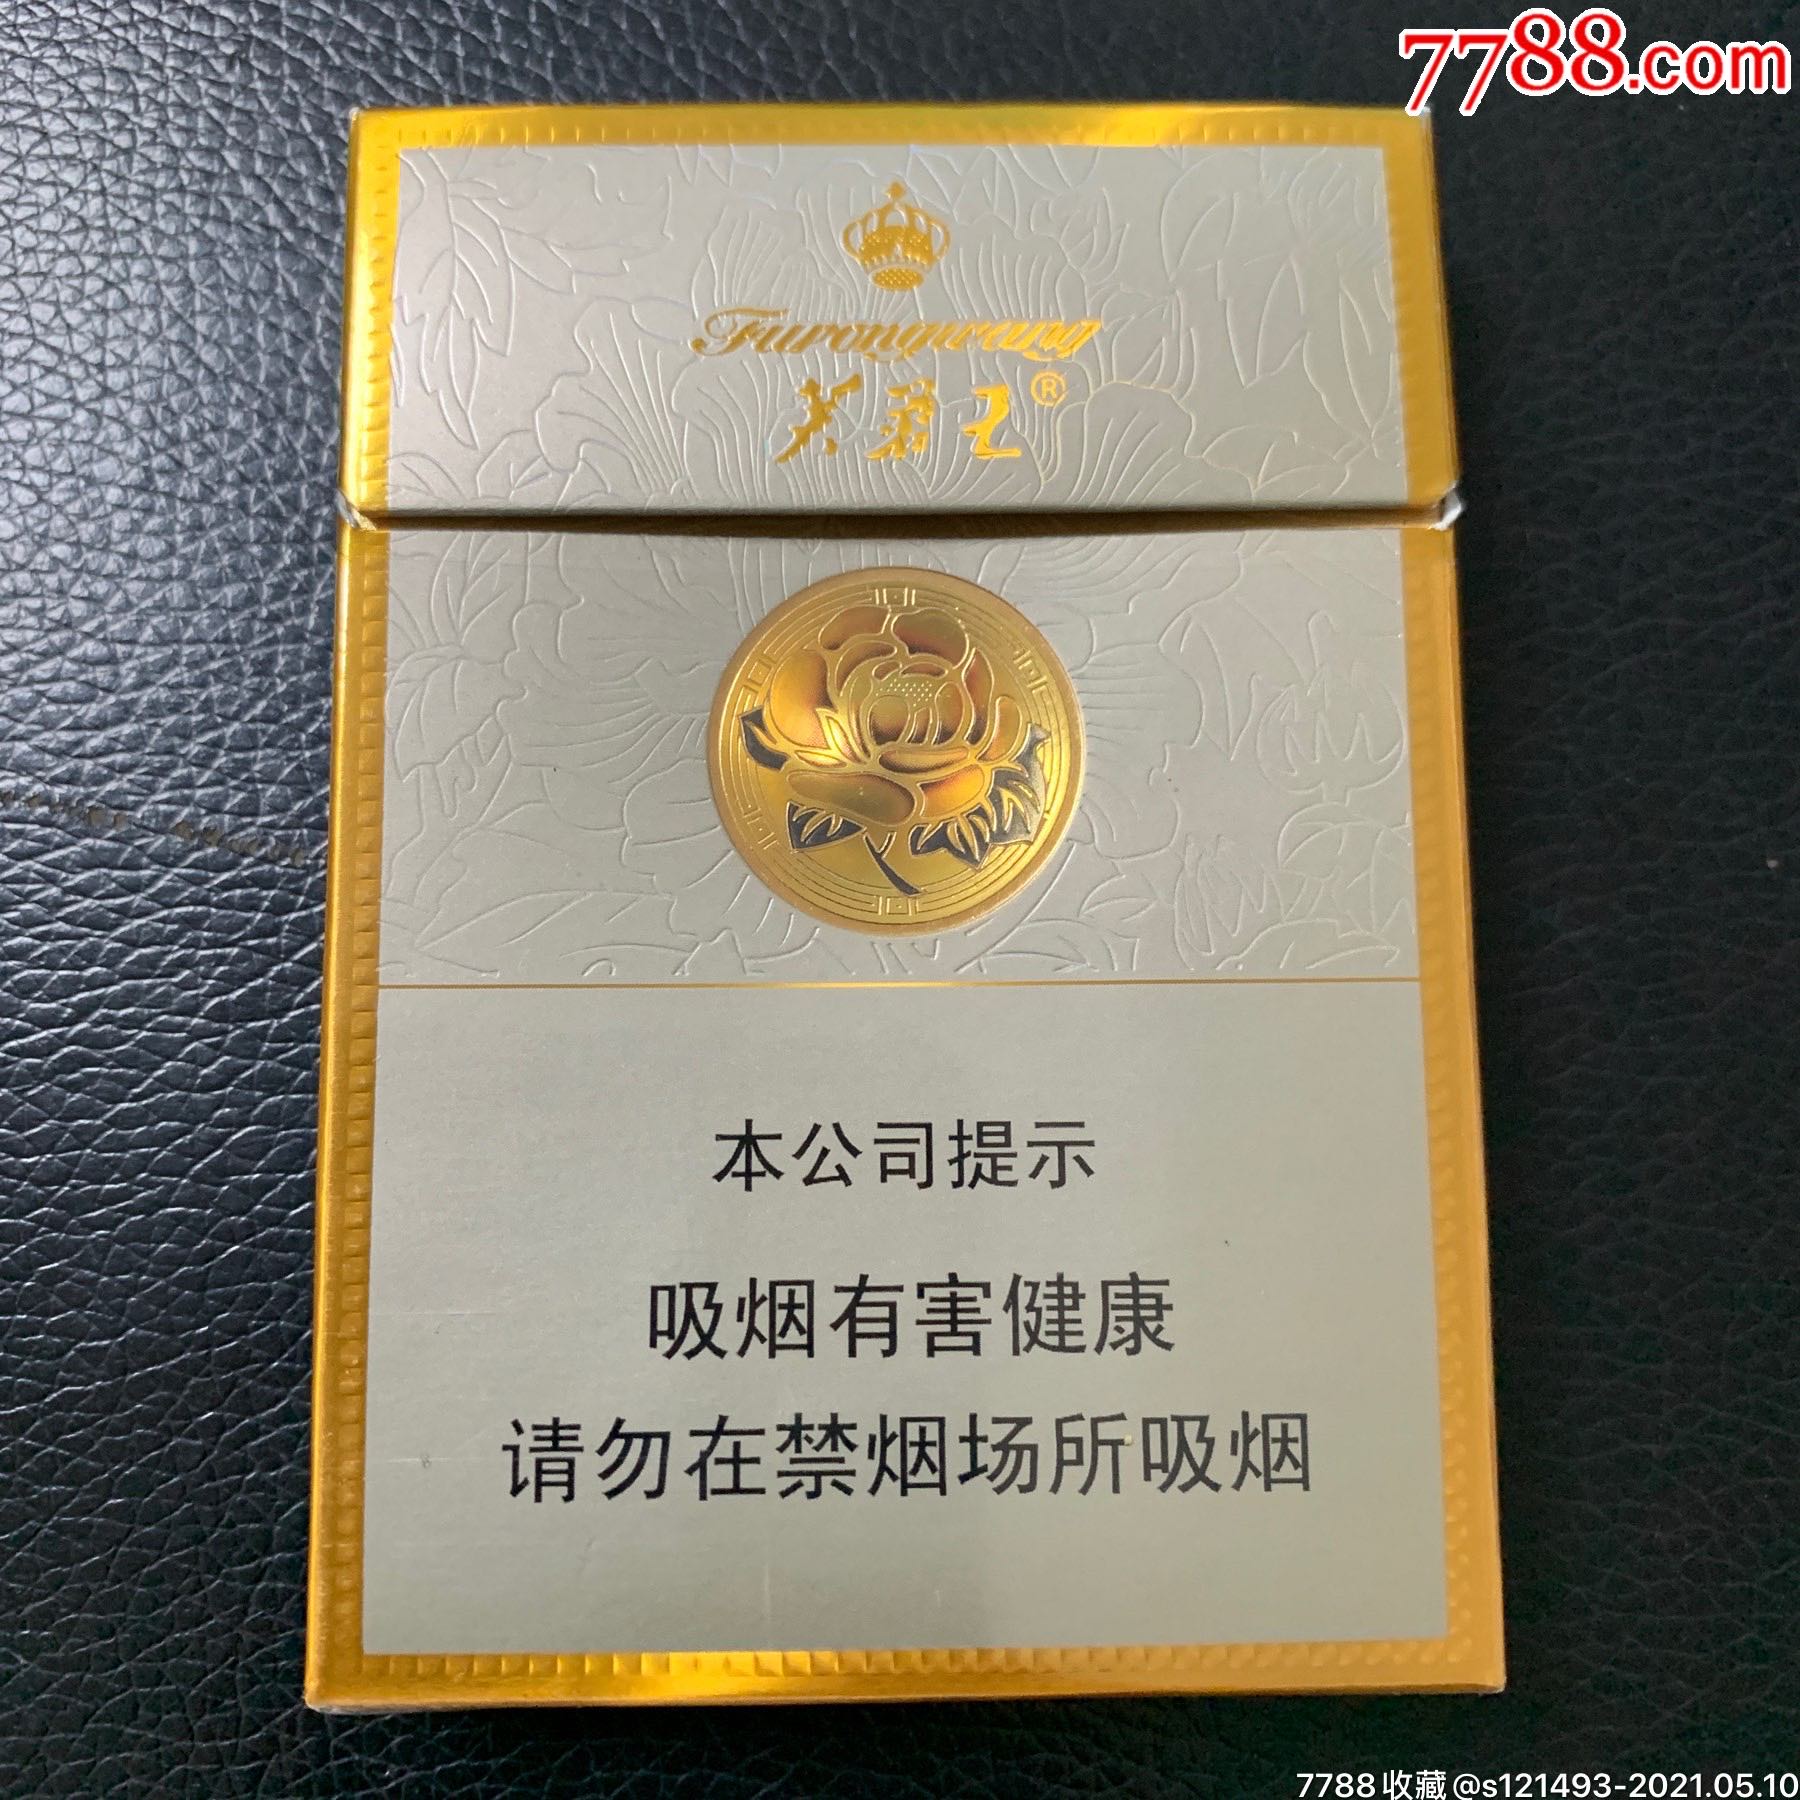 芙蓉王中支-价格:1.0000元-se80093685-烟标/烟盒